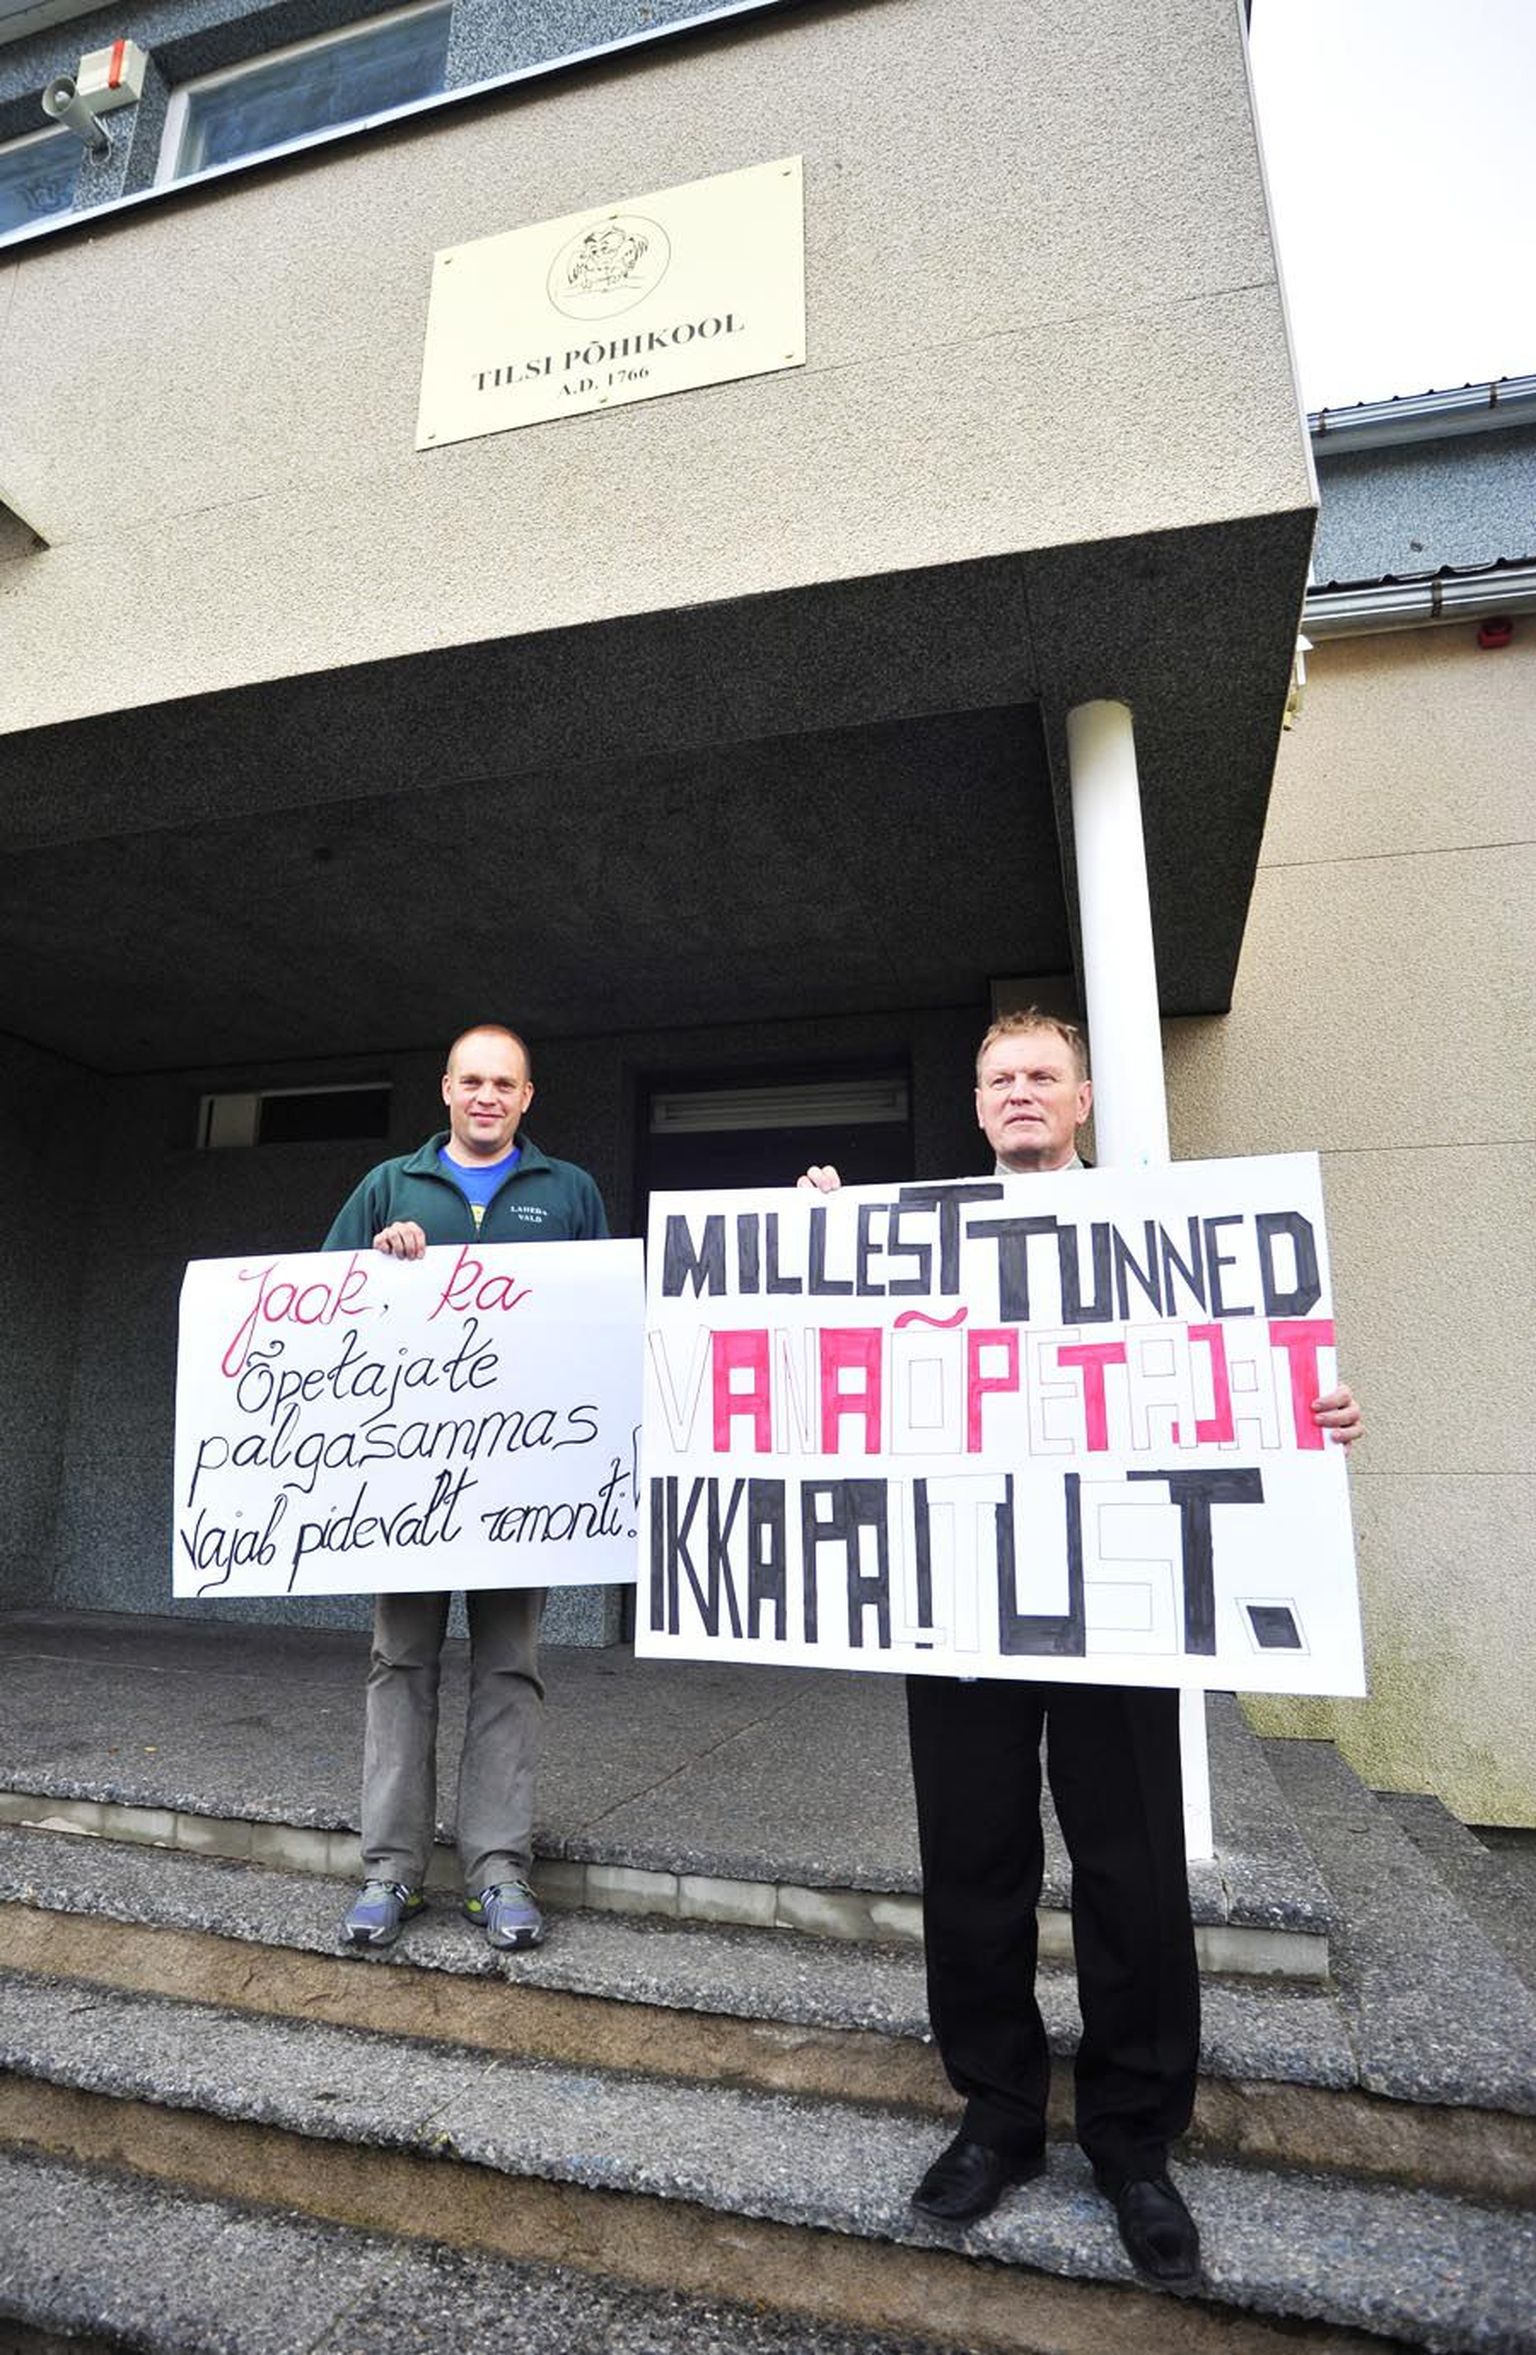 Otse pintsli alt tulnud plakateid näitasid eile Tilsi põhikooli õpetaja Olev Veberson (vasakul) ja direktor 
Aivo Roonurm. Täna on nad nendega juba Tallinnas õpetajate meeleavaldusel.